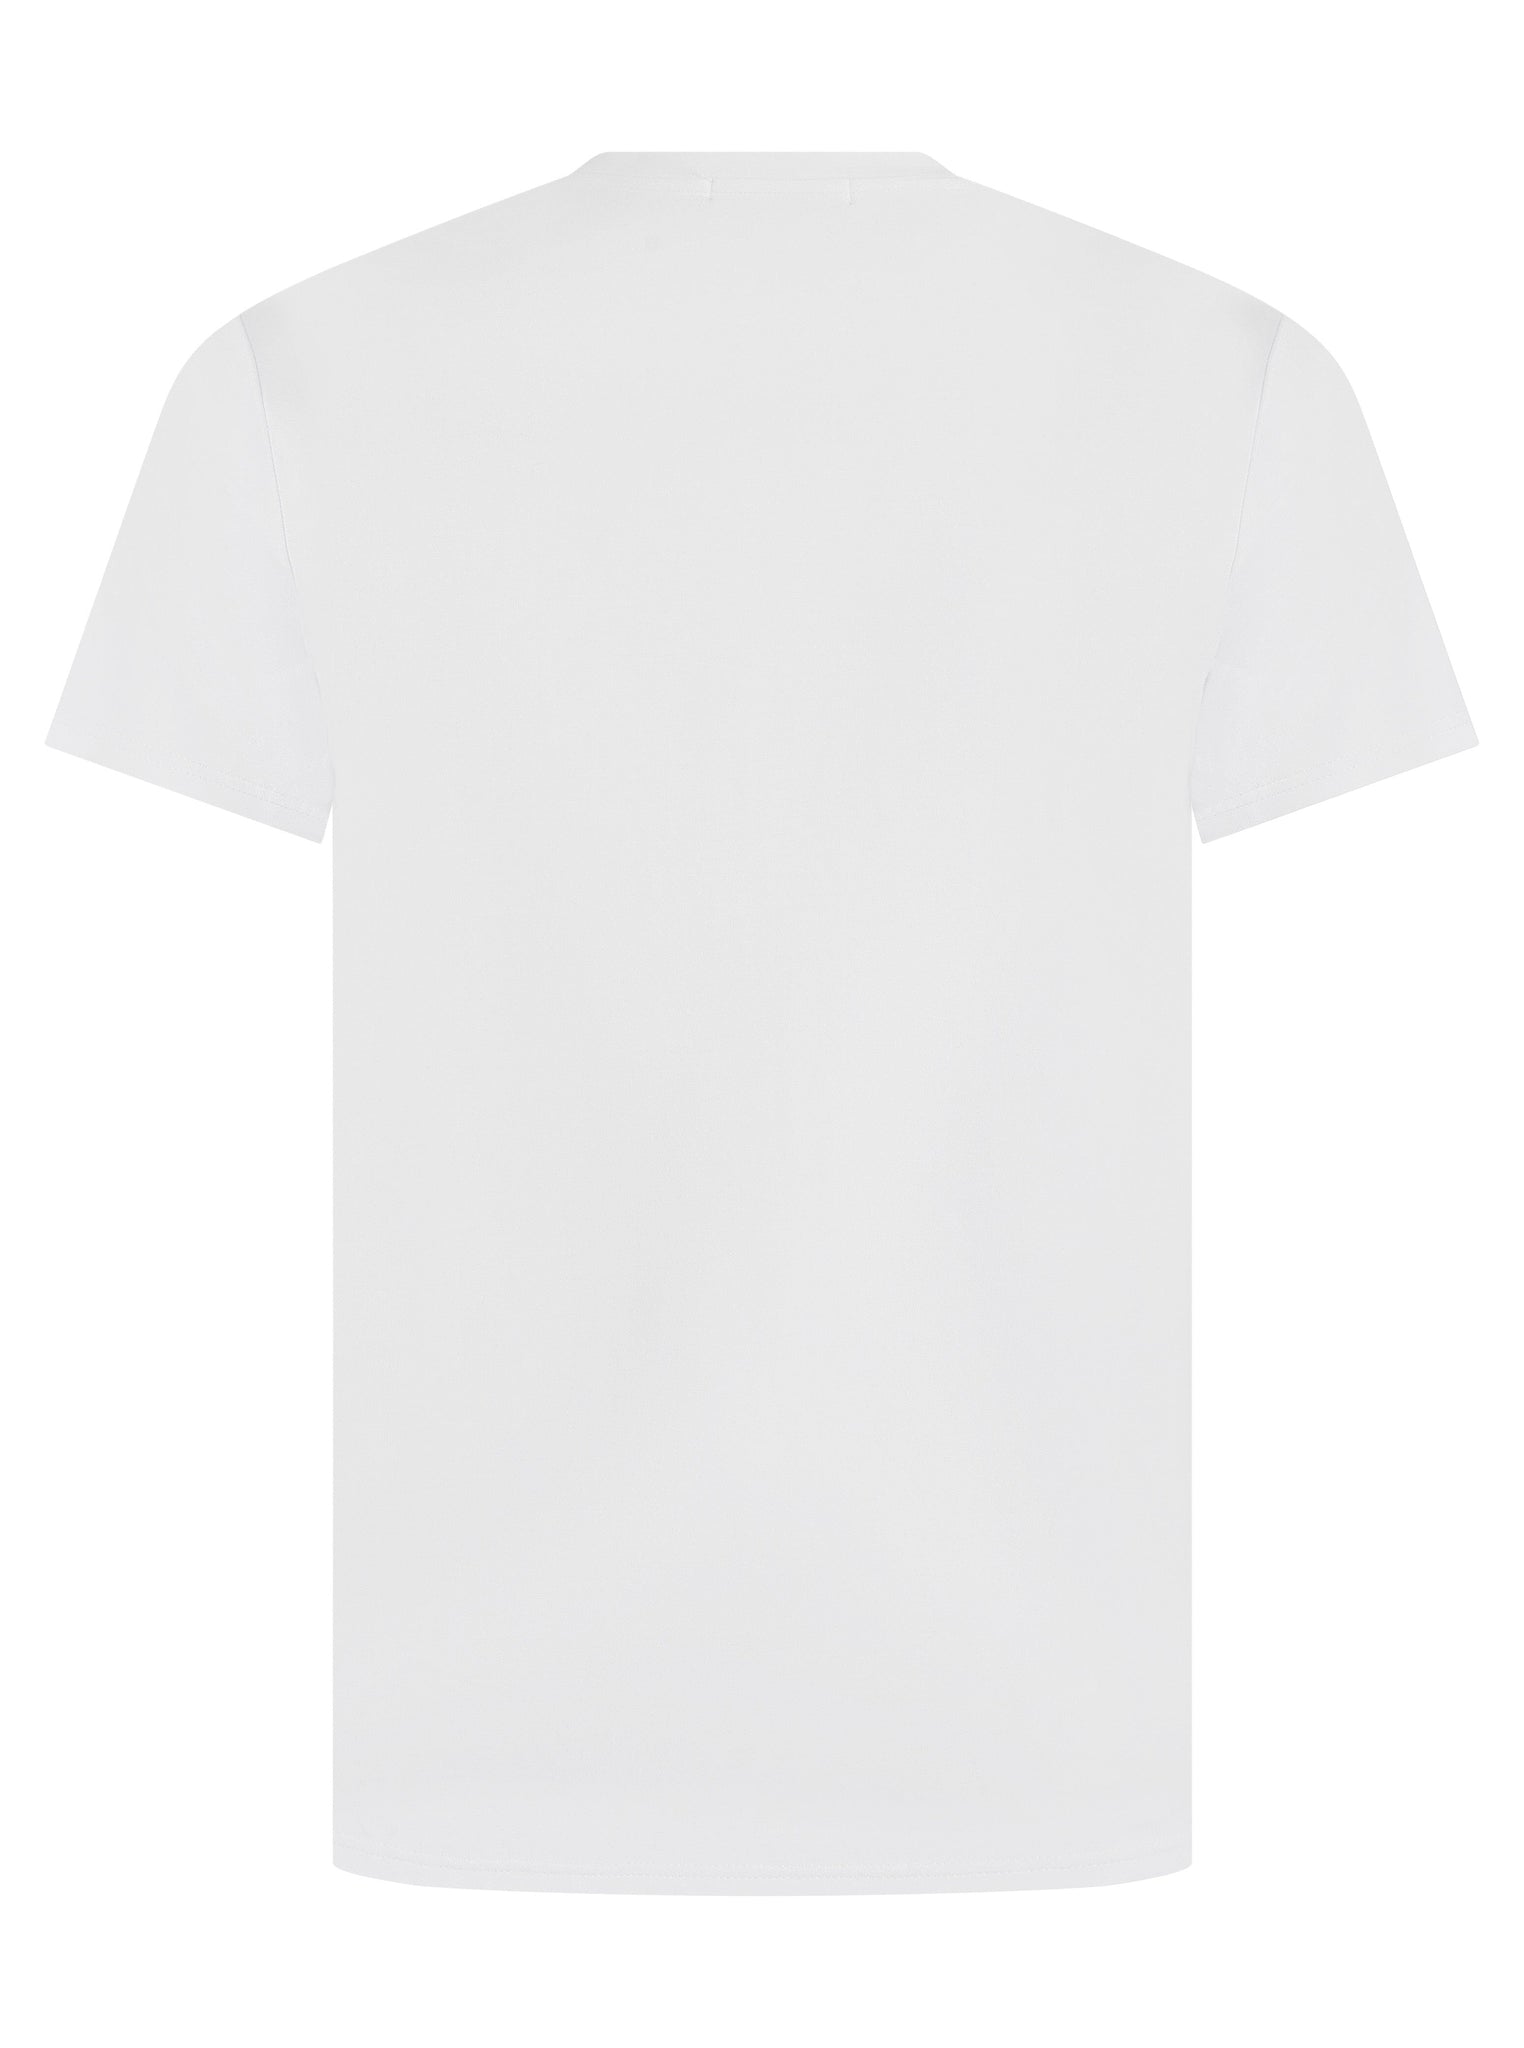 Tech Pocket T-shirt White/Slate Grey